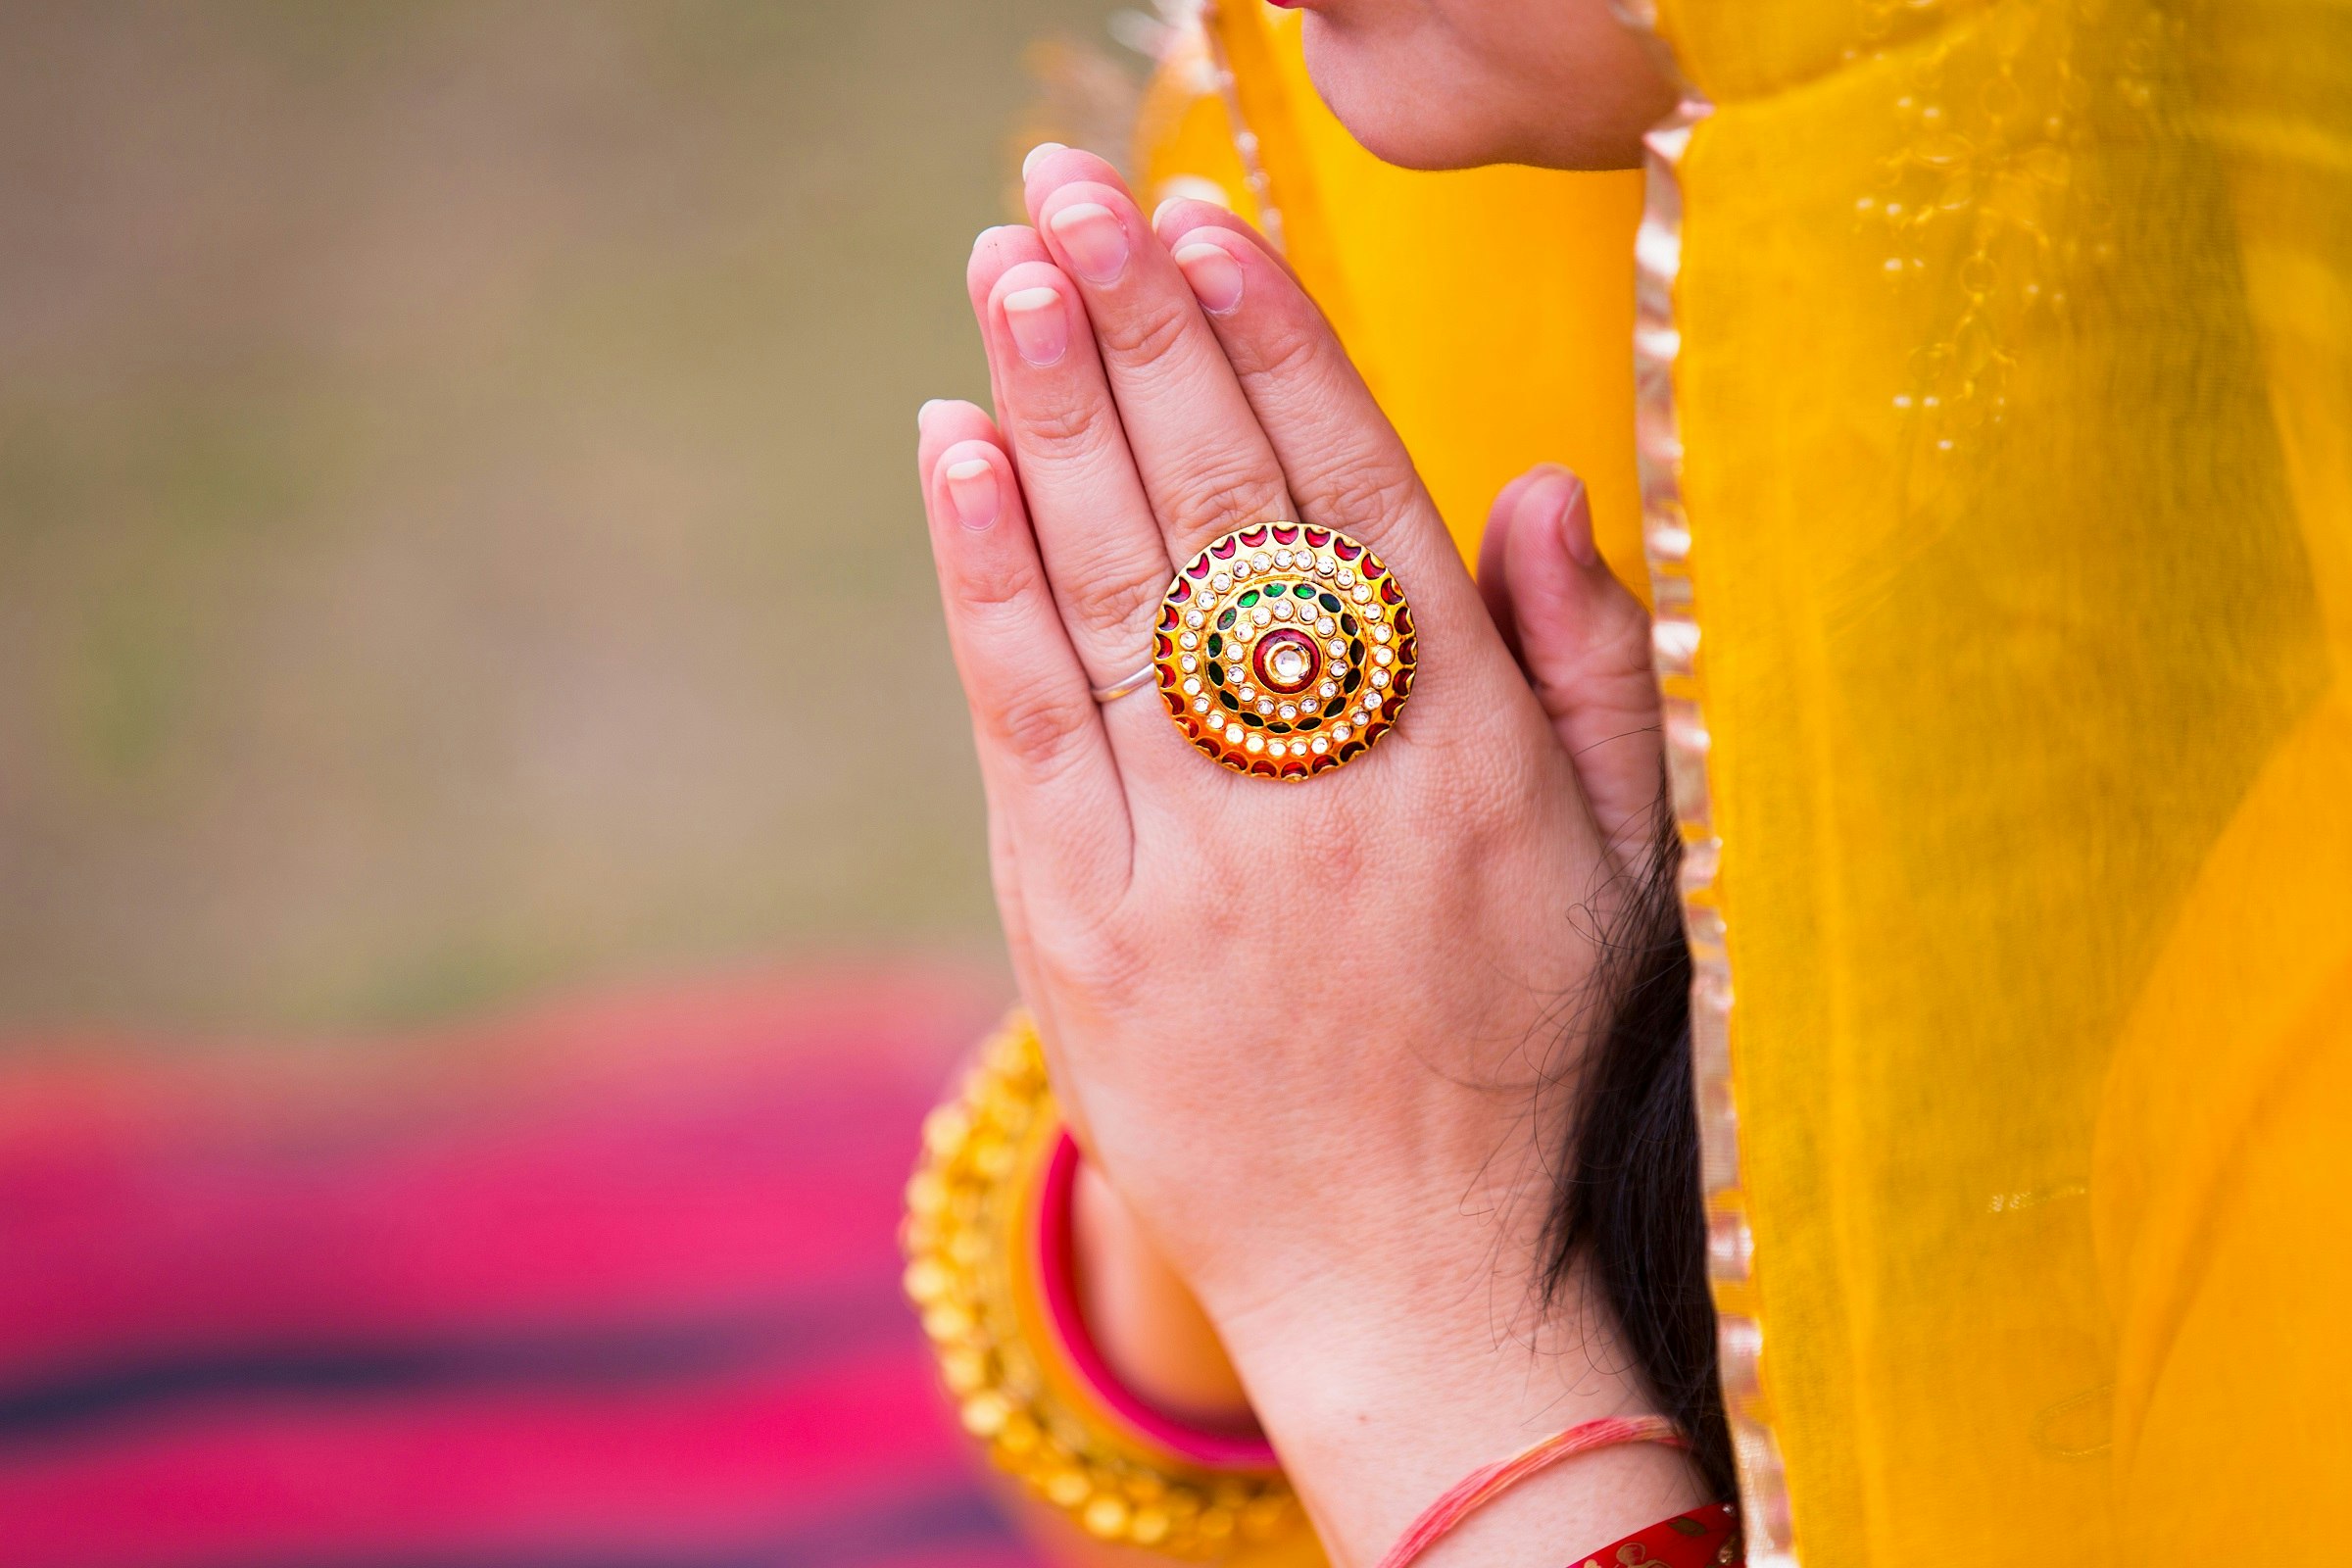 Closeup of an Indian woman's hands doing namaste